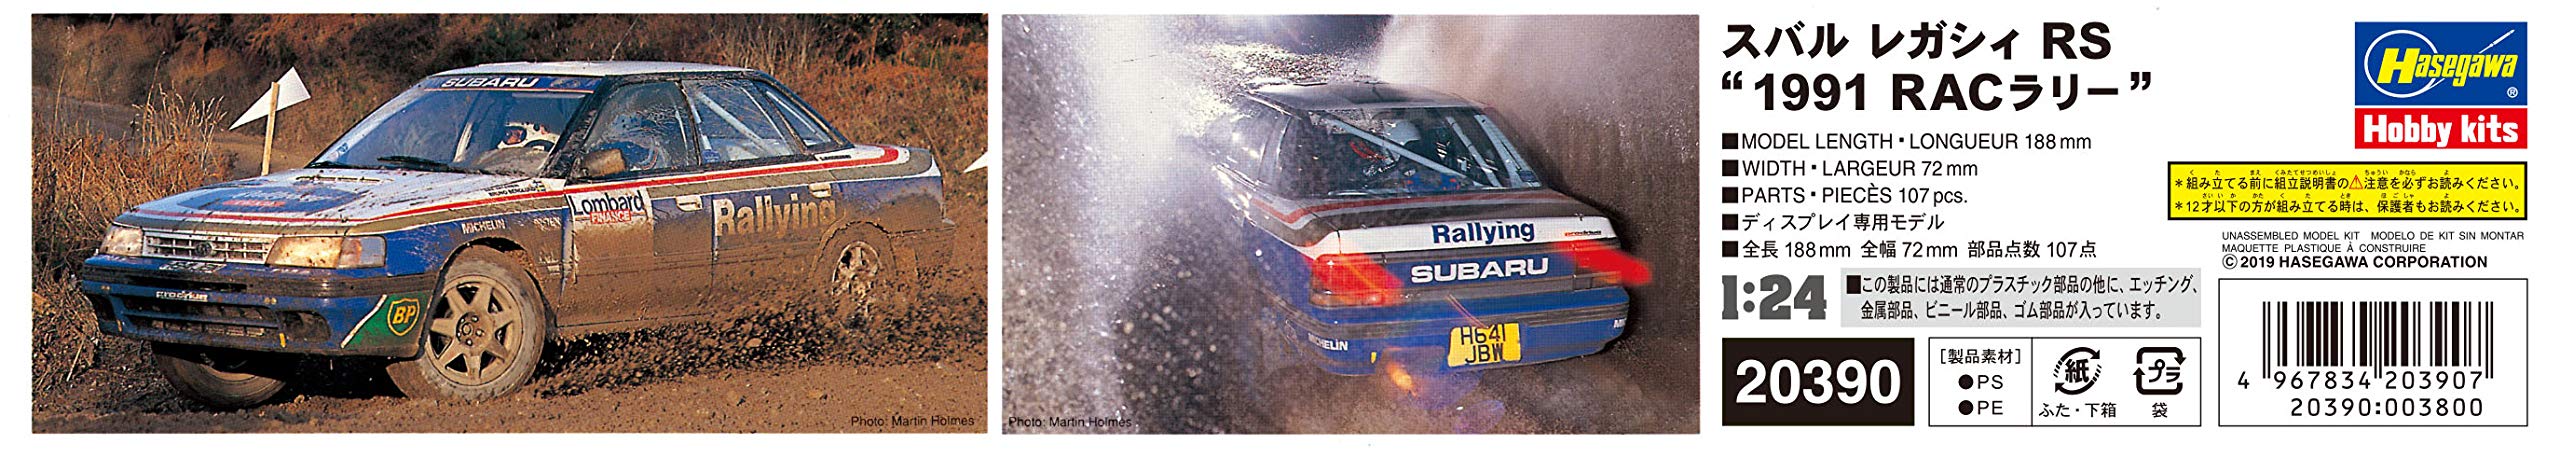 HASEGAWA 20390 Subaru Legacy Rs 1991 Rac Rally 1/24 Scale Kit